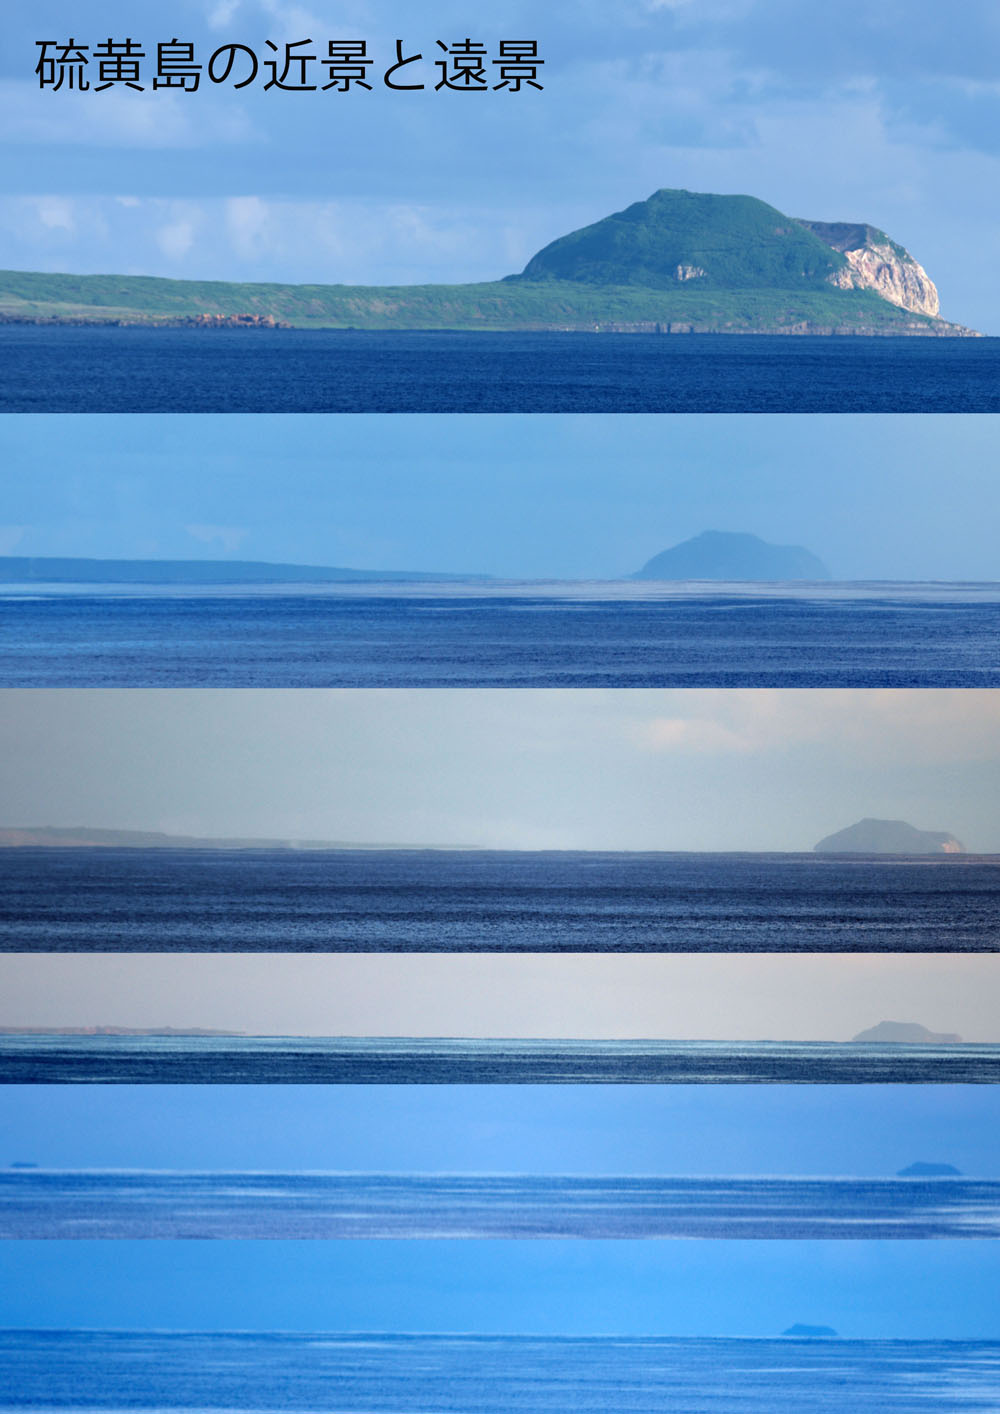 硫黄島の近景と遠景